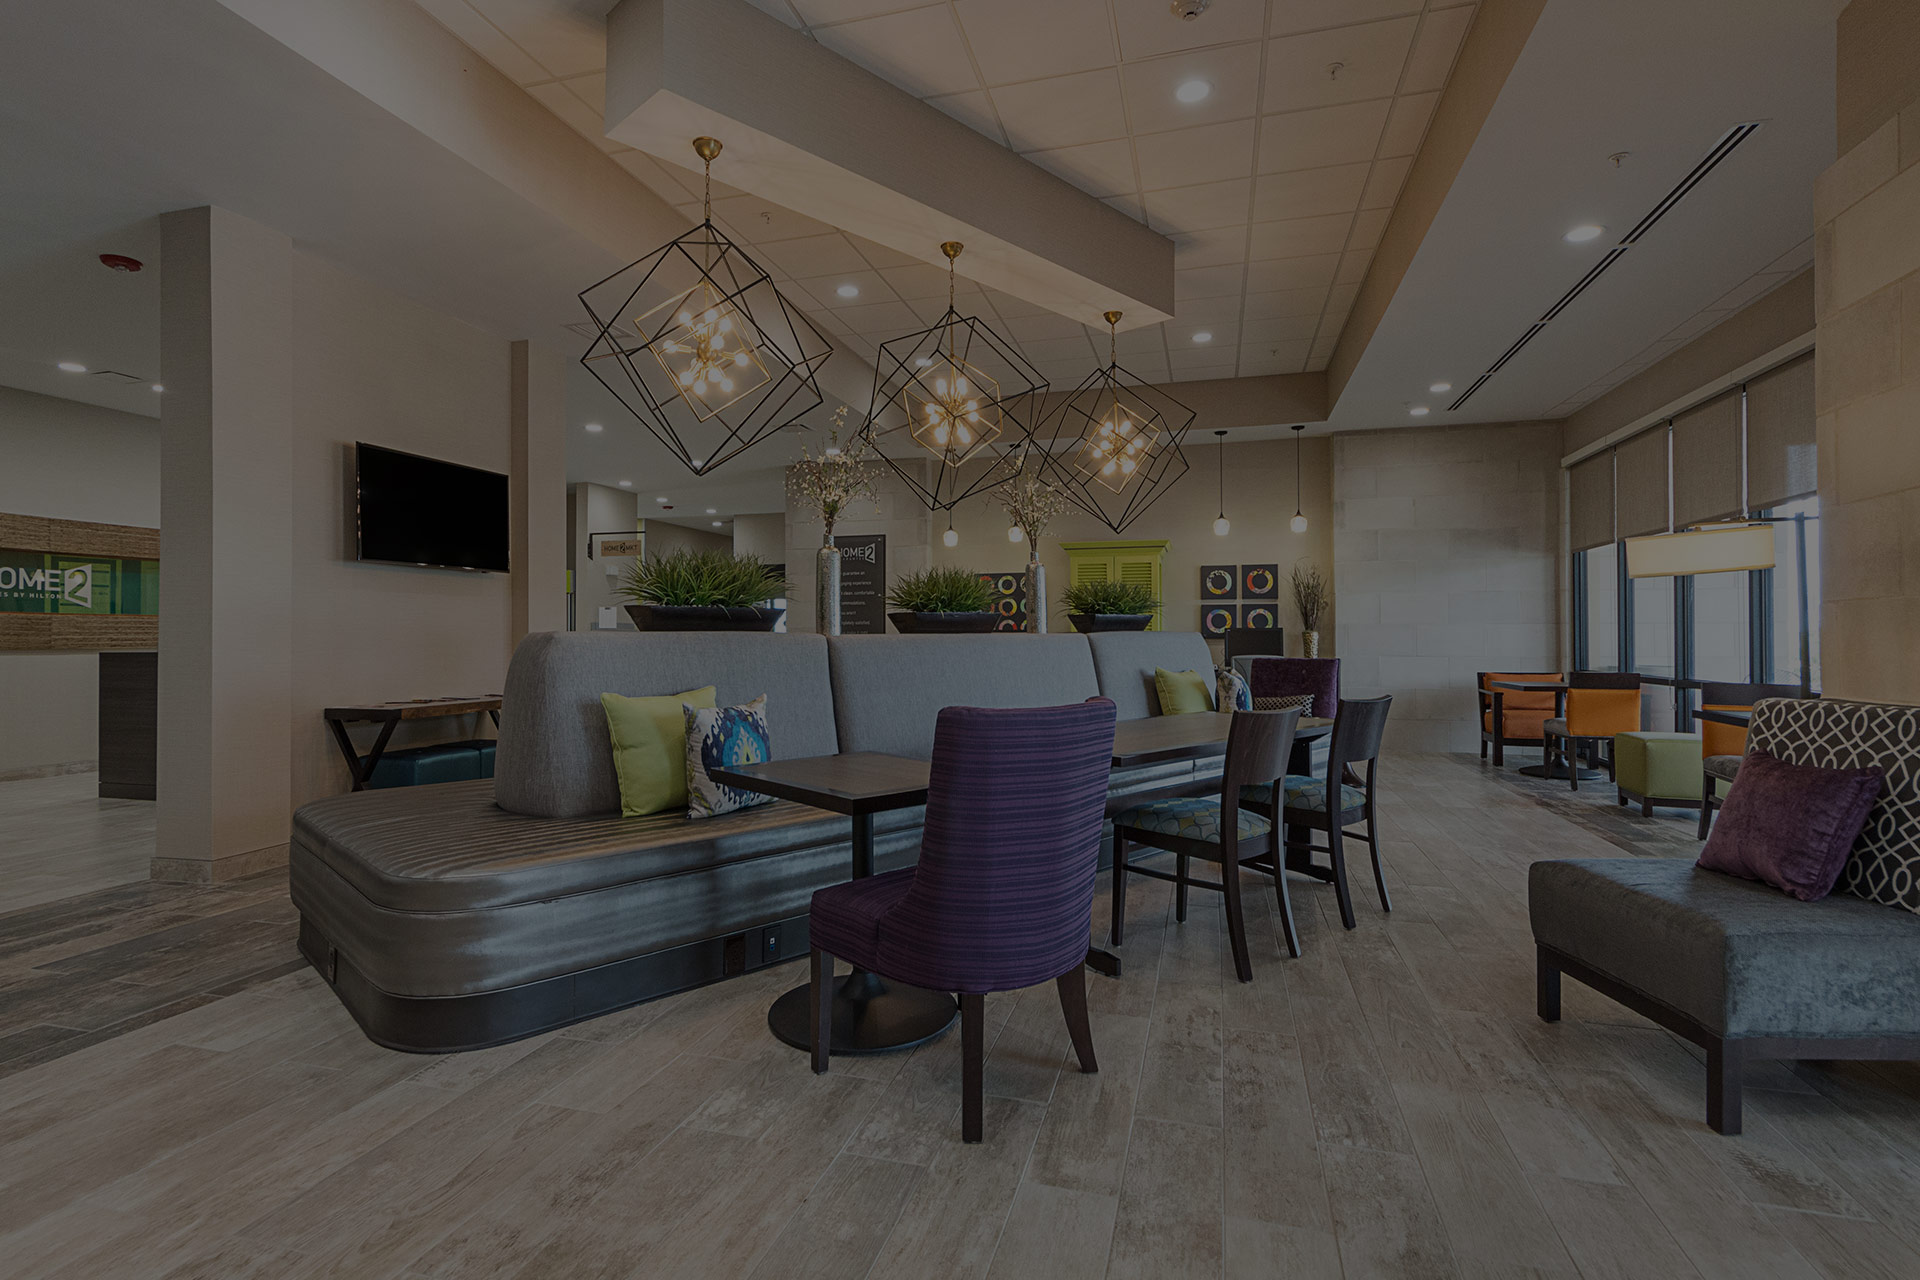 Kriya Hotels Slider Image Of Home2 Suites Grand Prairie Lobby